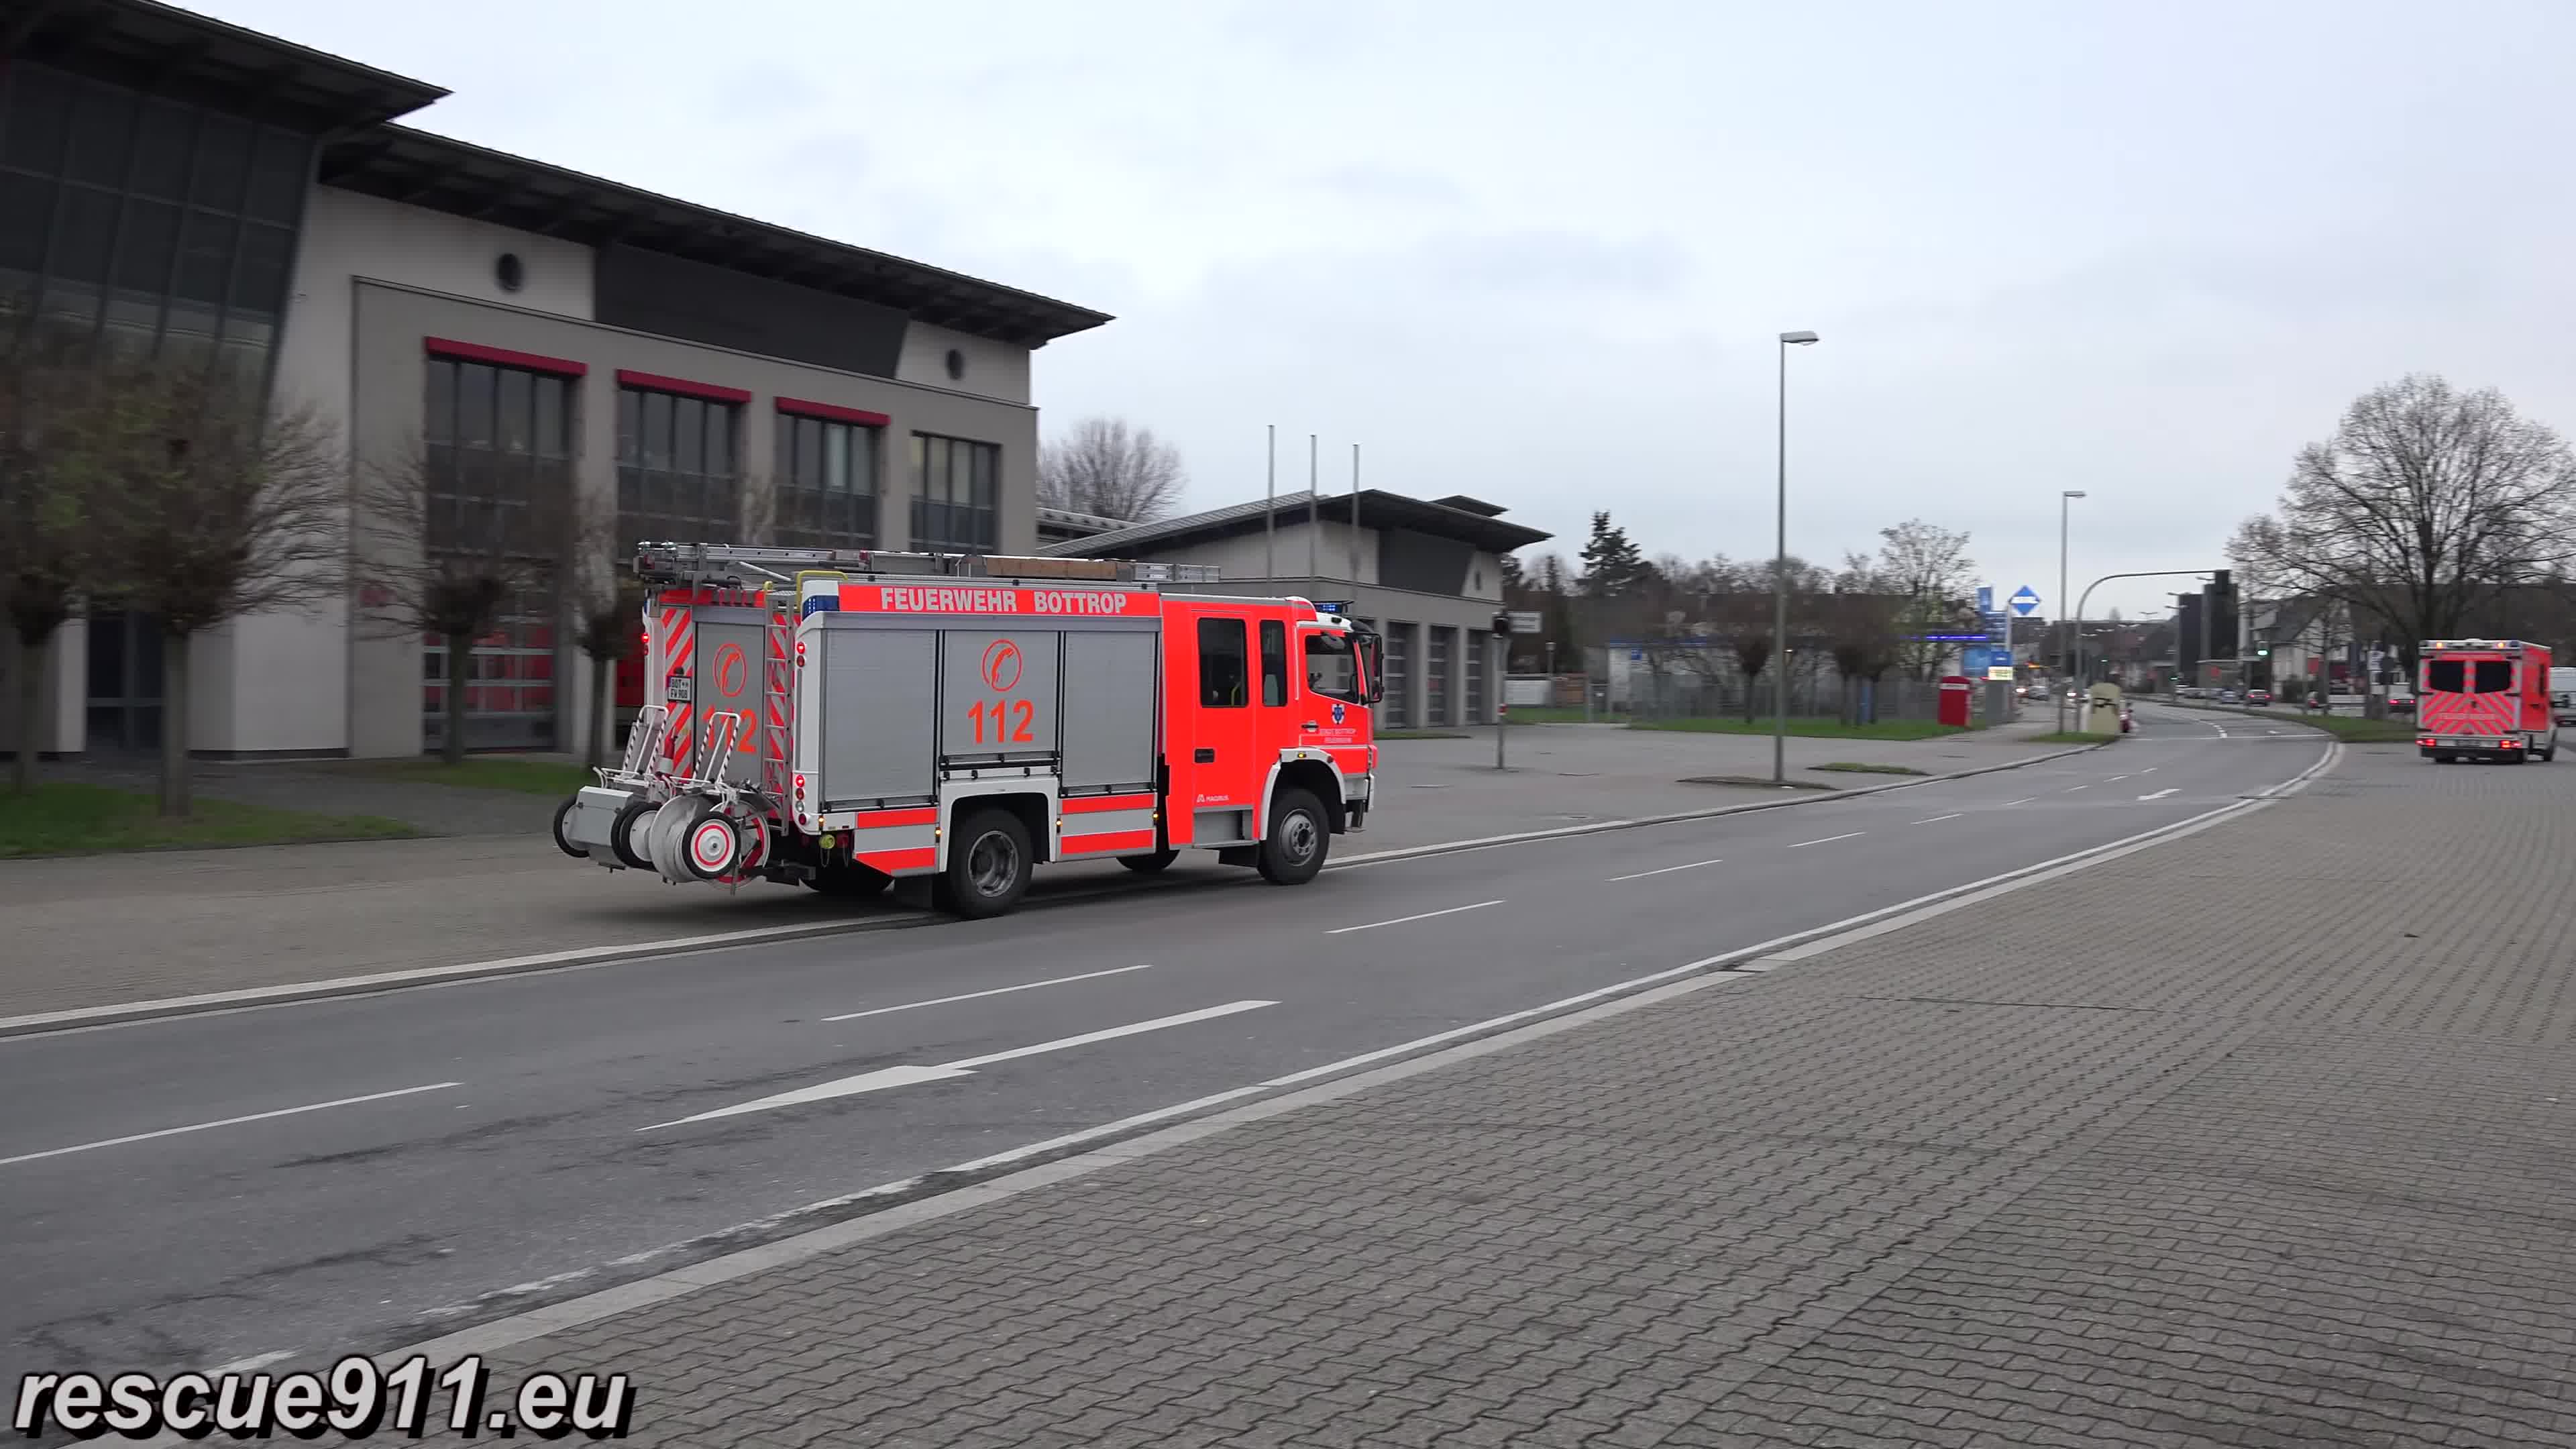 德国鲁尔区博特罗普消防车出警